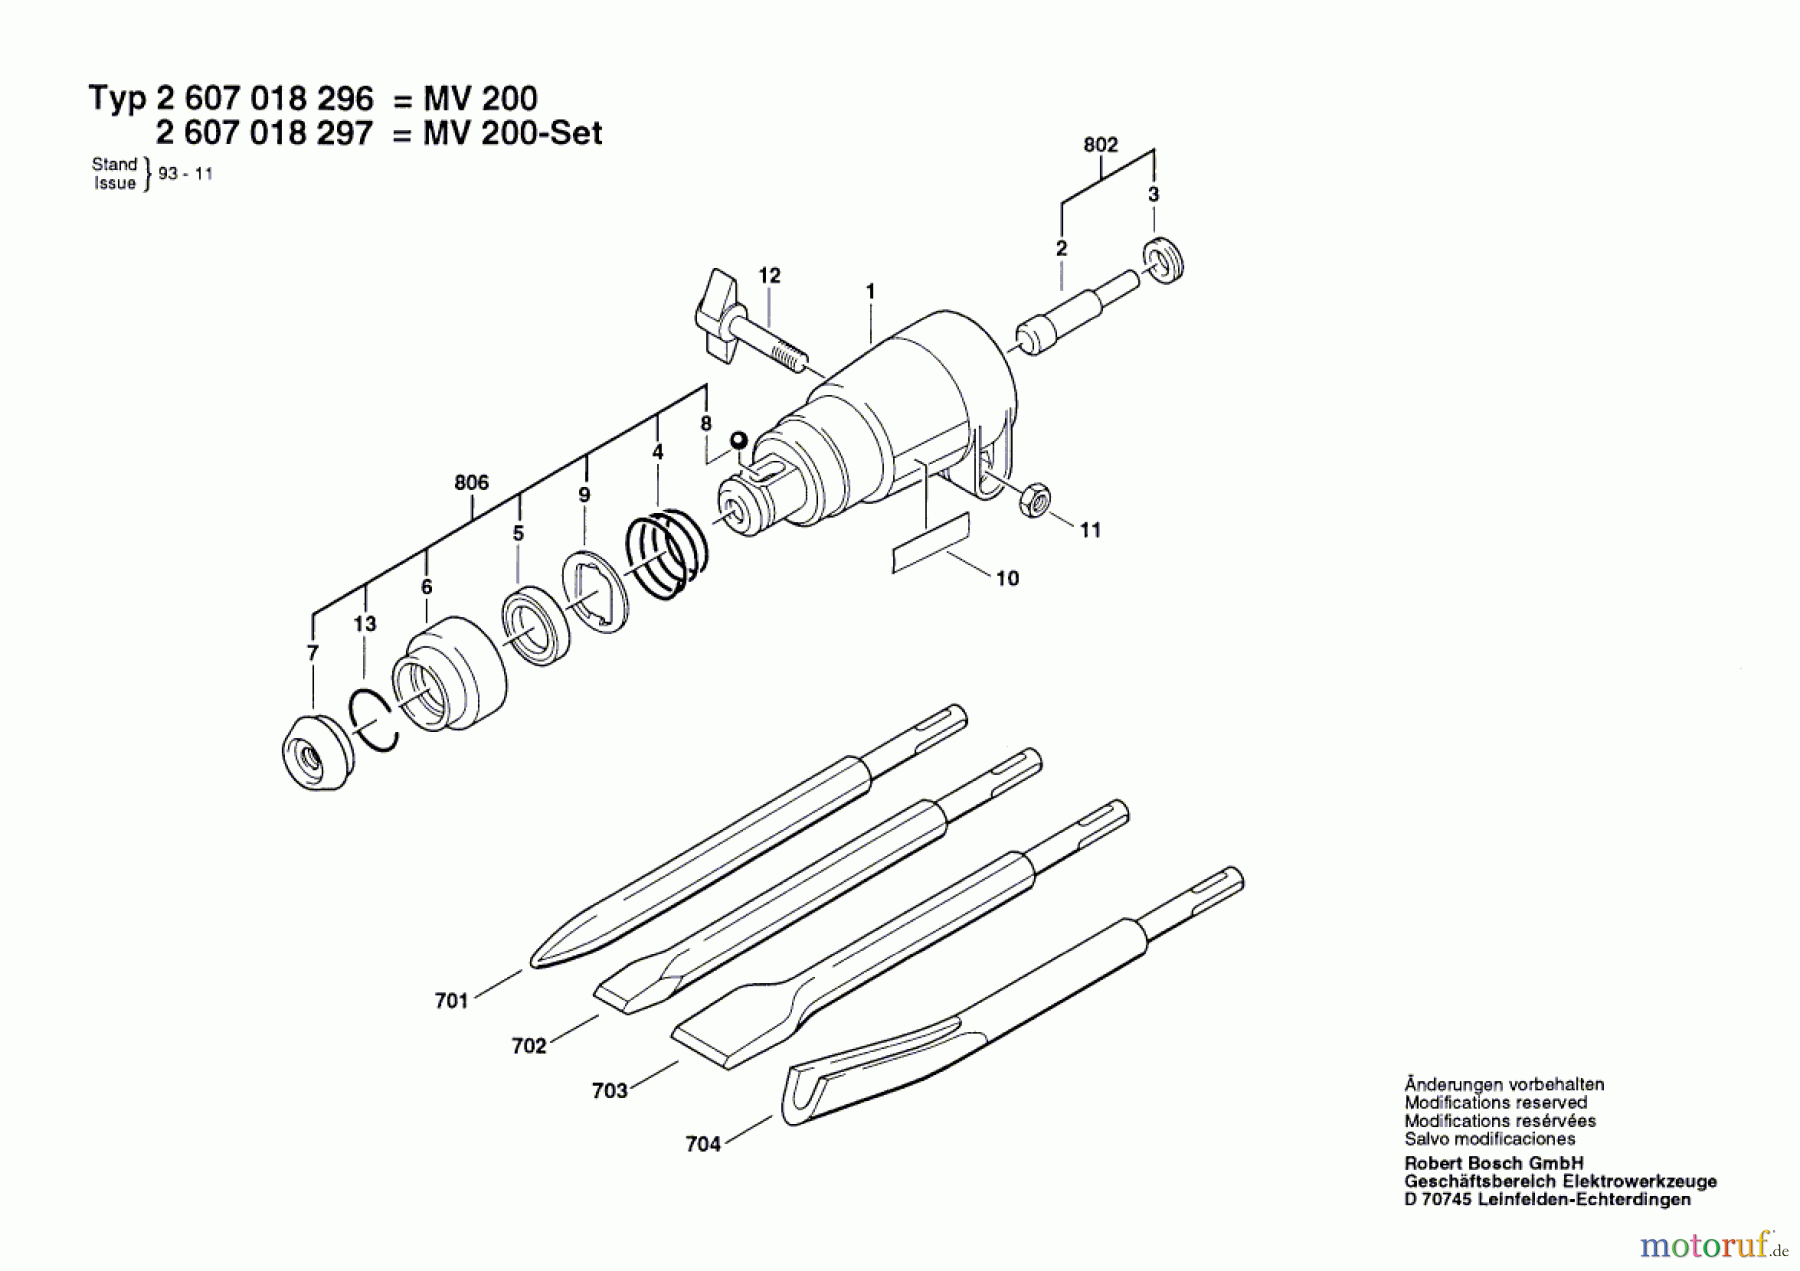  Bosch Werkzeug Meisselset MV 200 Seite 1